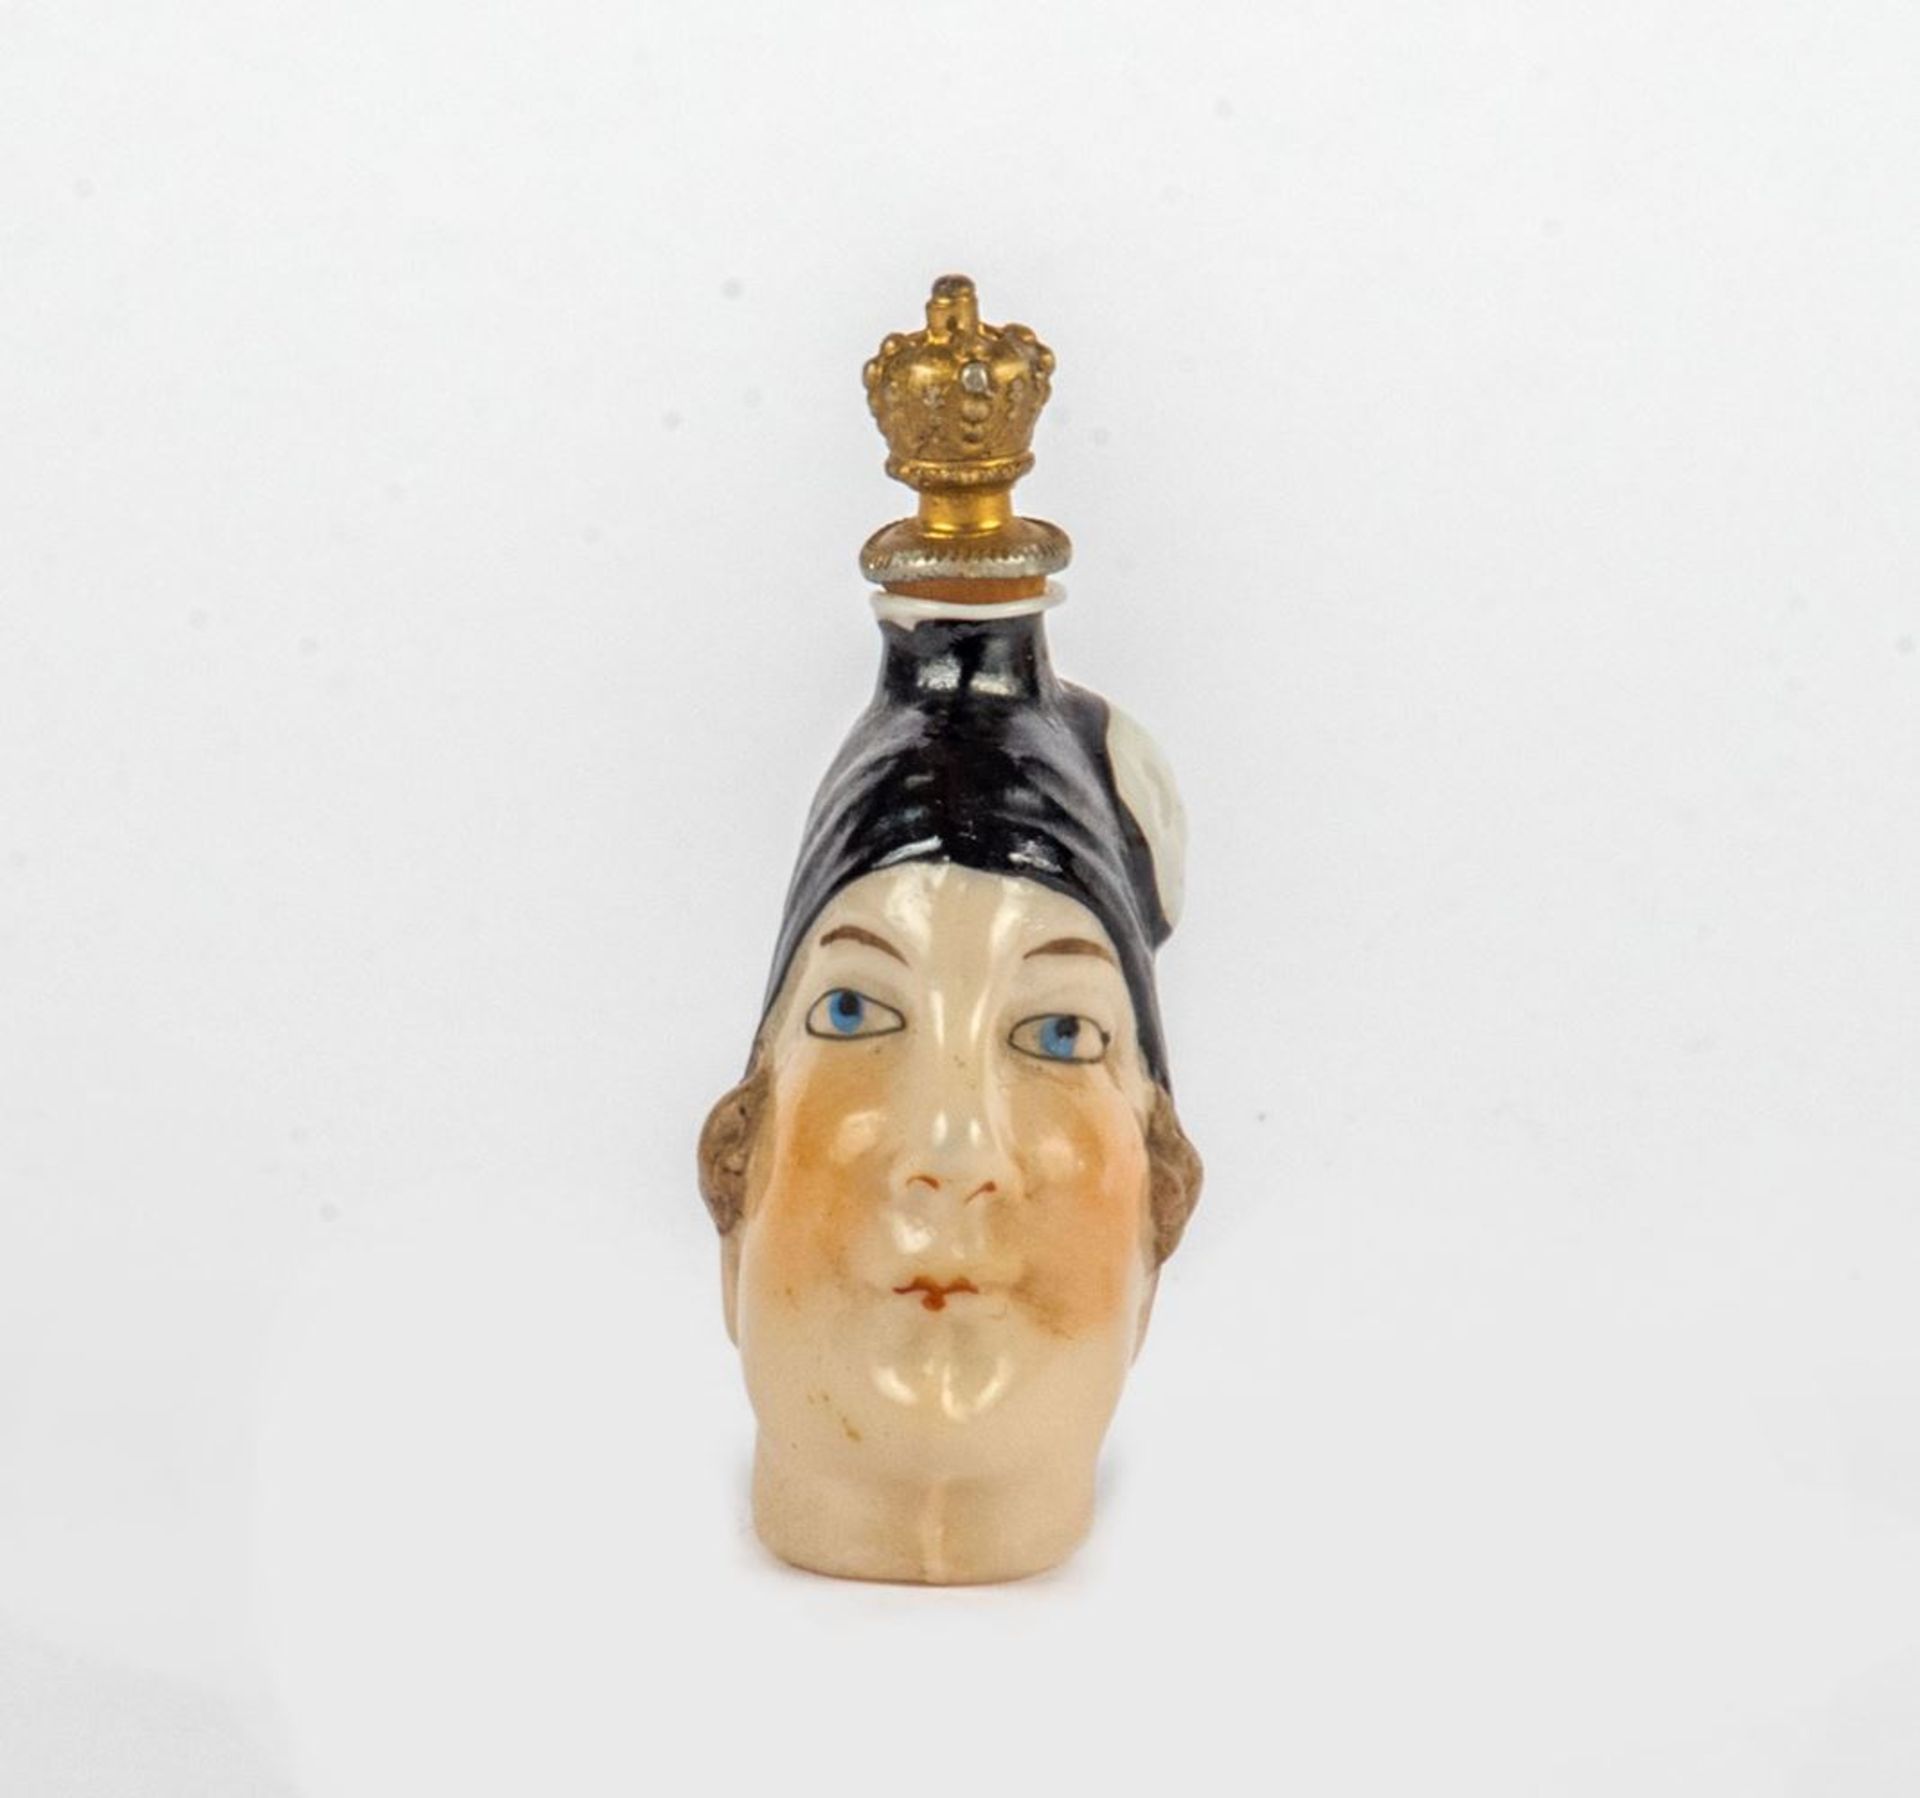 Flakon in Form eines FrauenkopfesPorzellan farbig staffiert, Stöpsel als Krone. H.: 6,5 cm. - Bild 2 aus 2